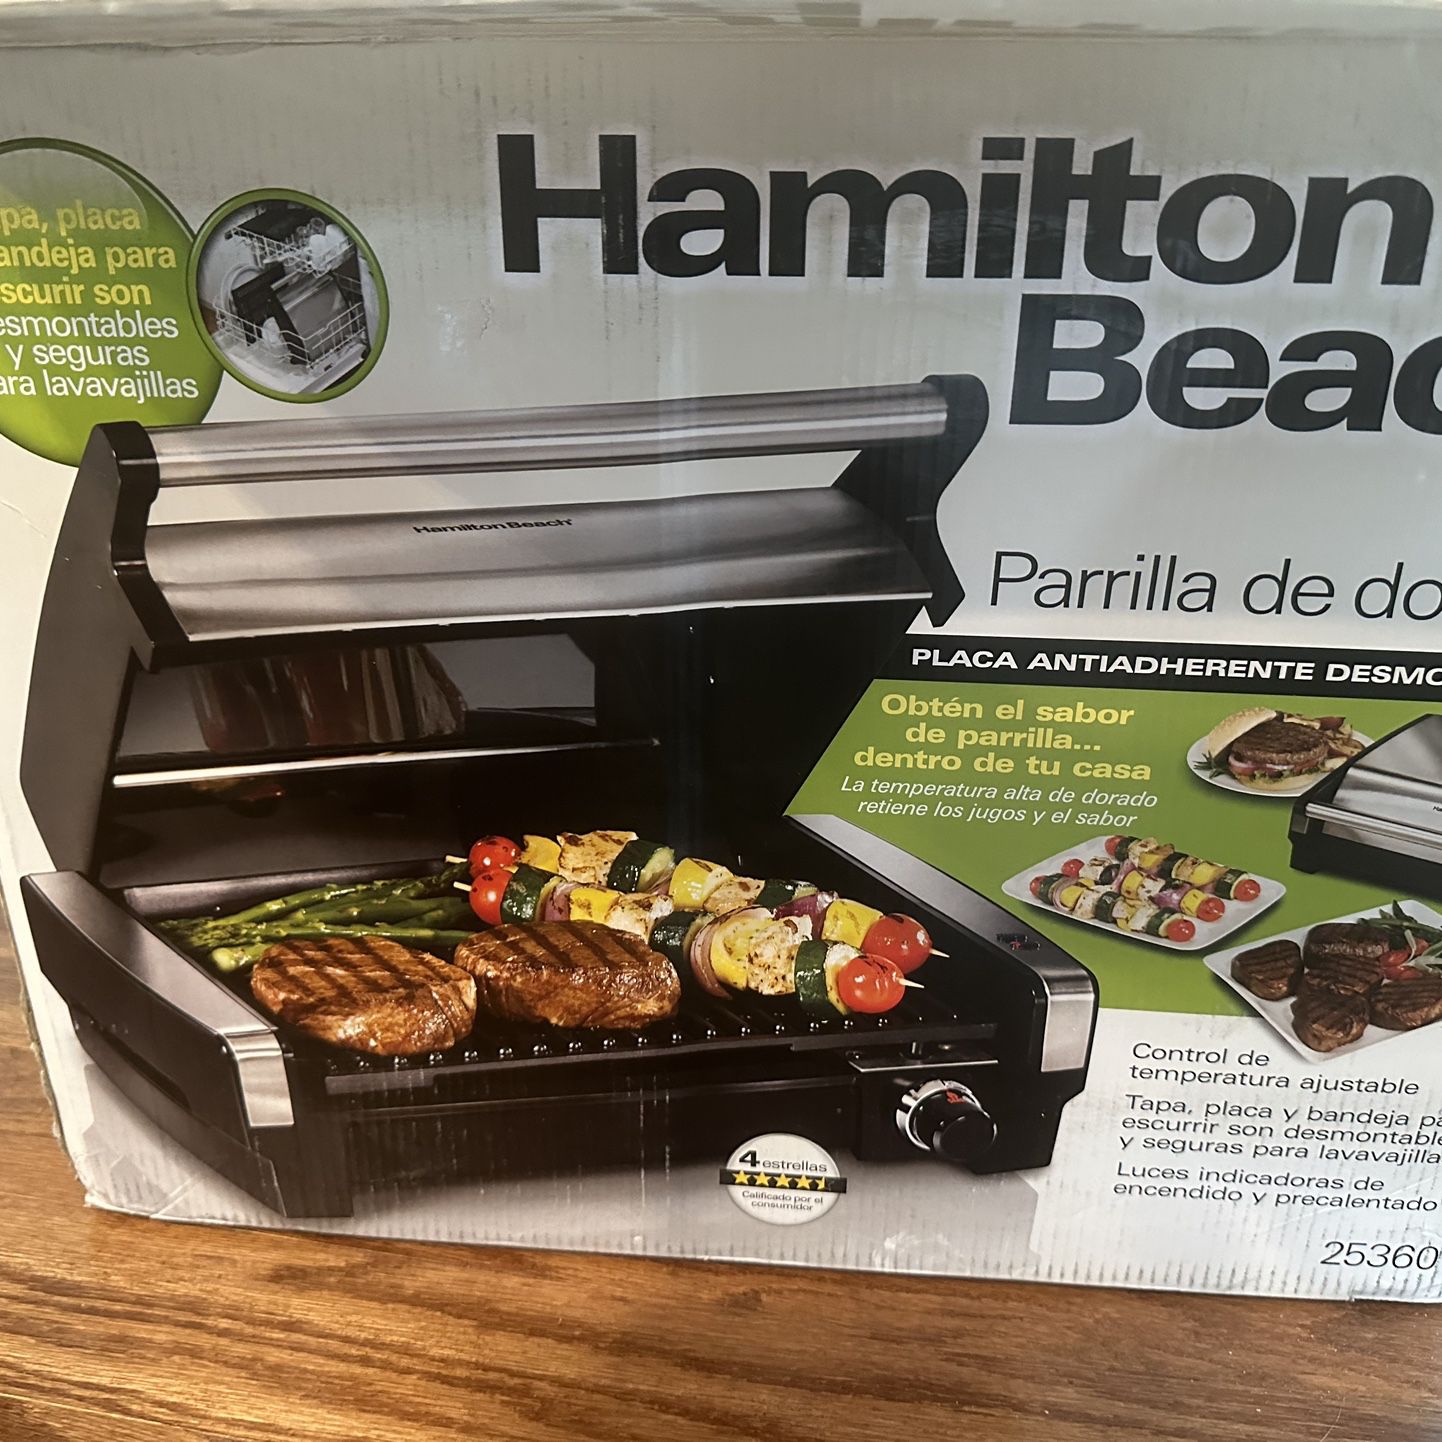 Hamilton Beach Grill (new open box) for Sale in Orlando, FL - OfferUp